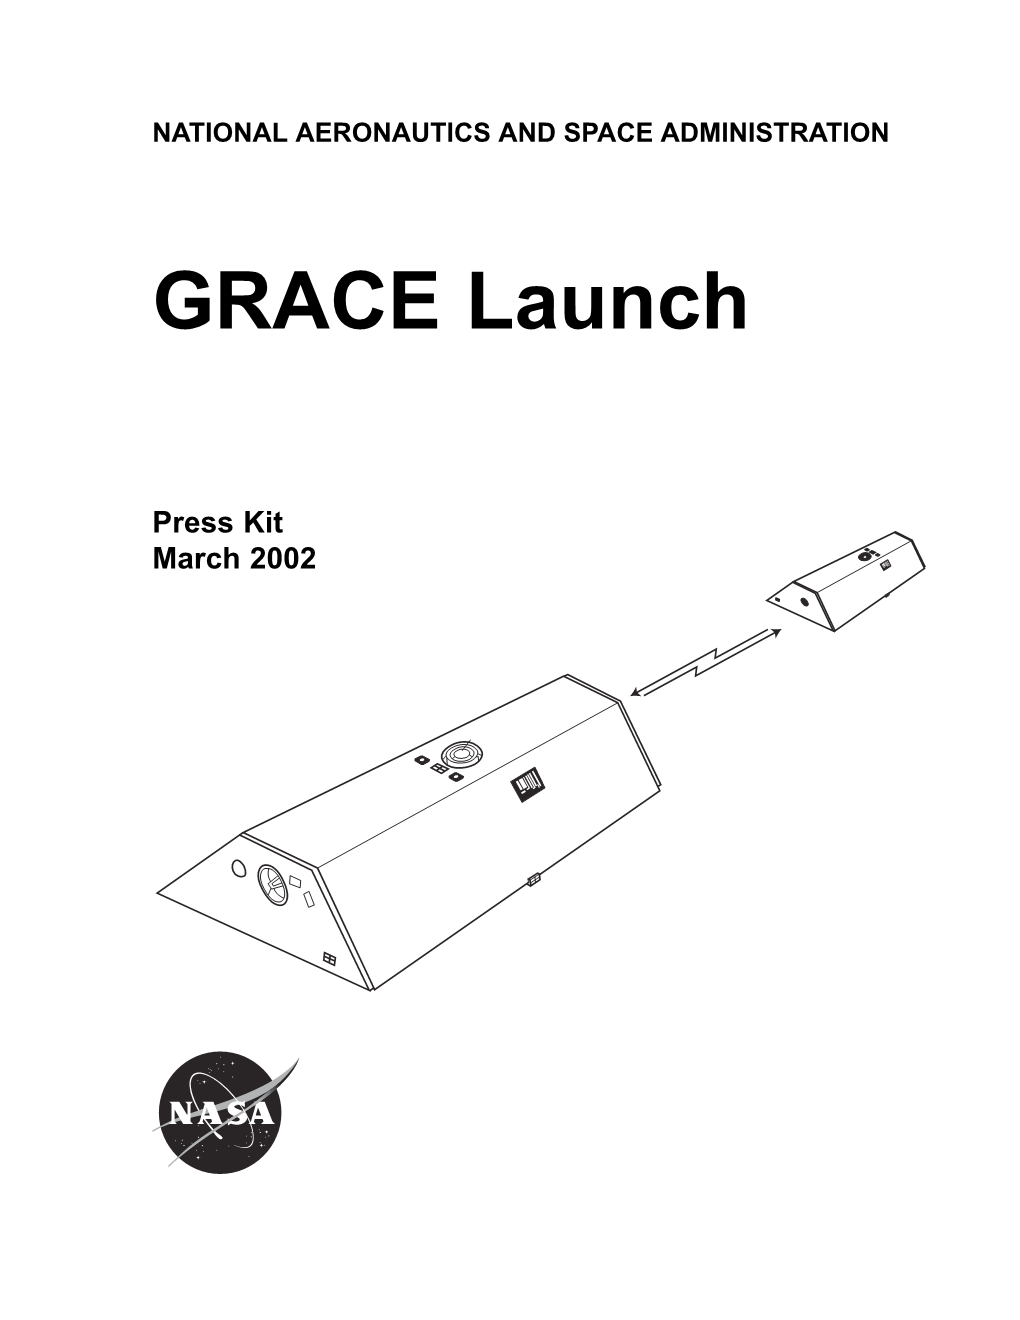 GRACE Launch Press